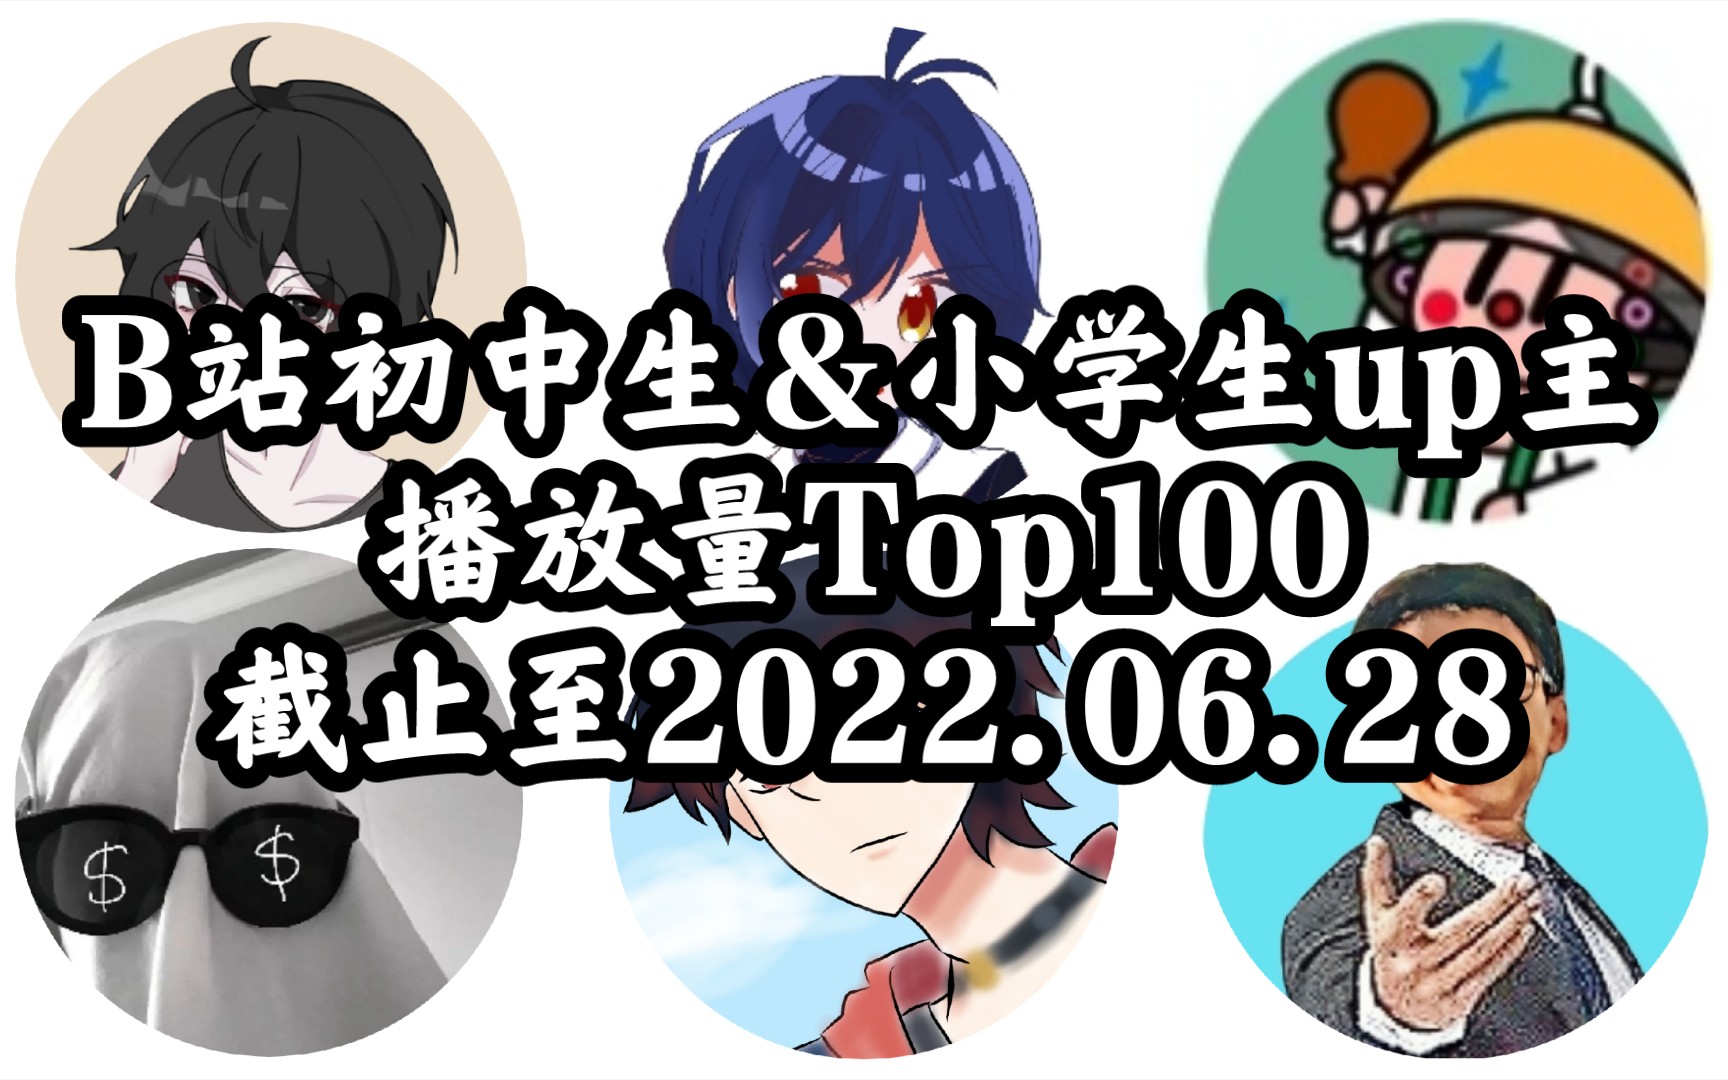 【Top100】谁是B站播放量最高的初中生&小学生up主？